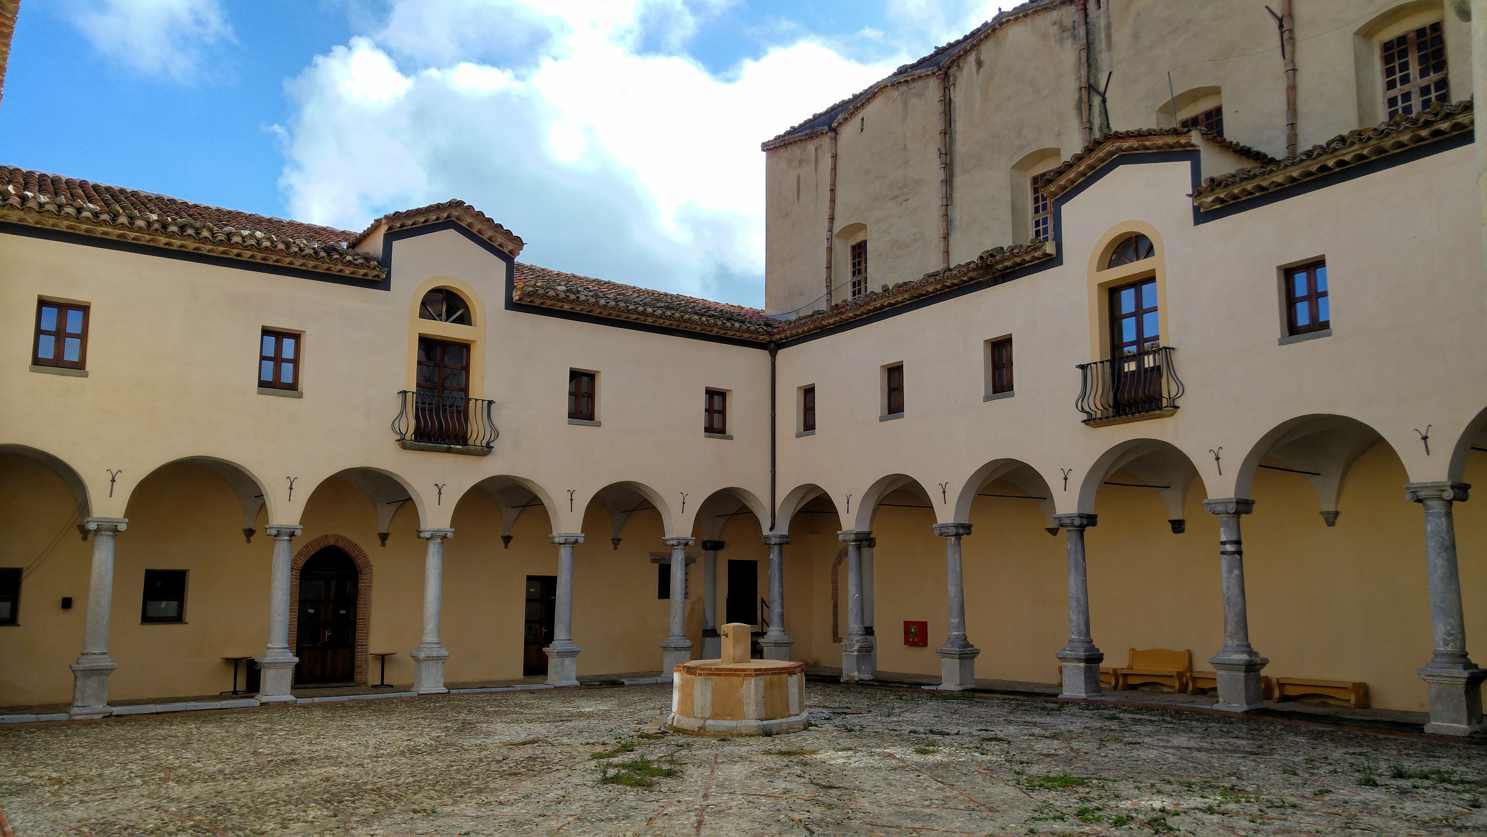 Castelbuono - claustro del convento de San Francesco